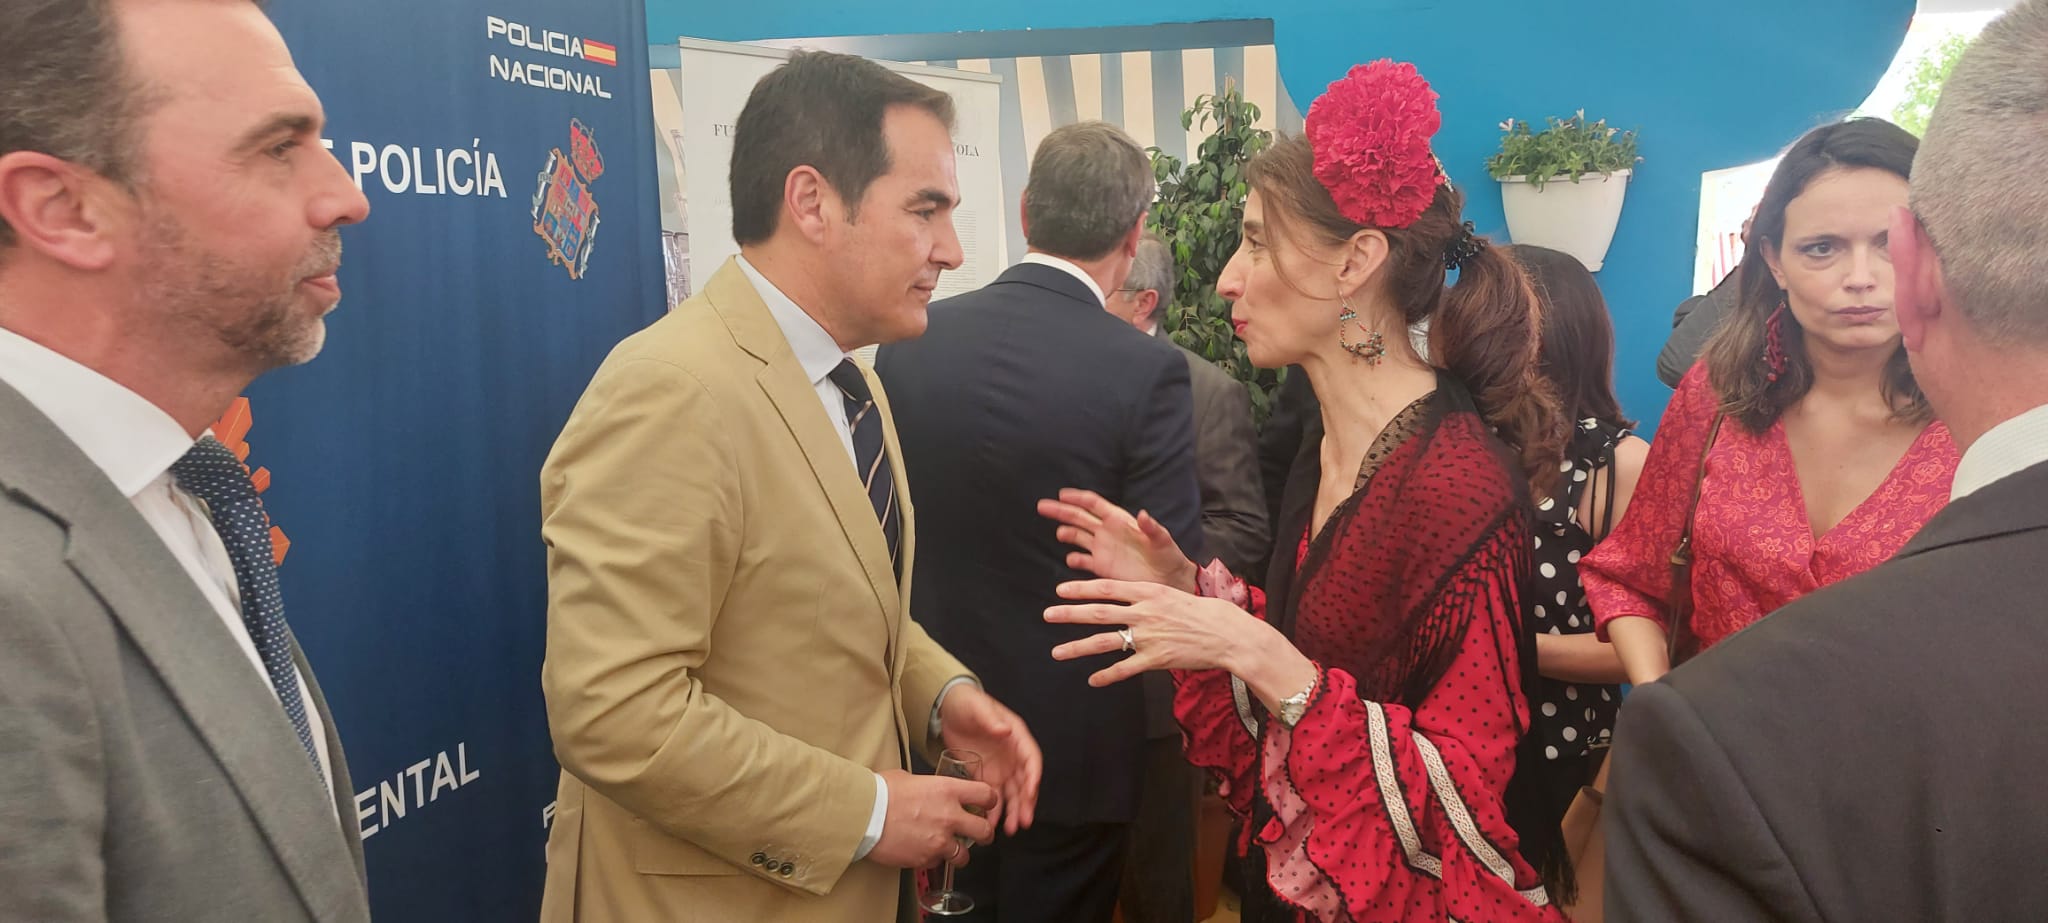 El consejero de Justicia, José Antonio Nieto, conversa con la ministra de Justicia, Pilar Llop, en la Feria de Abril de Sevilla, esta semana.